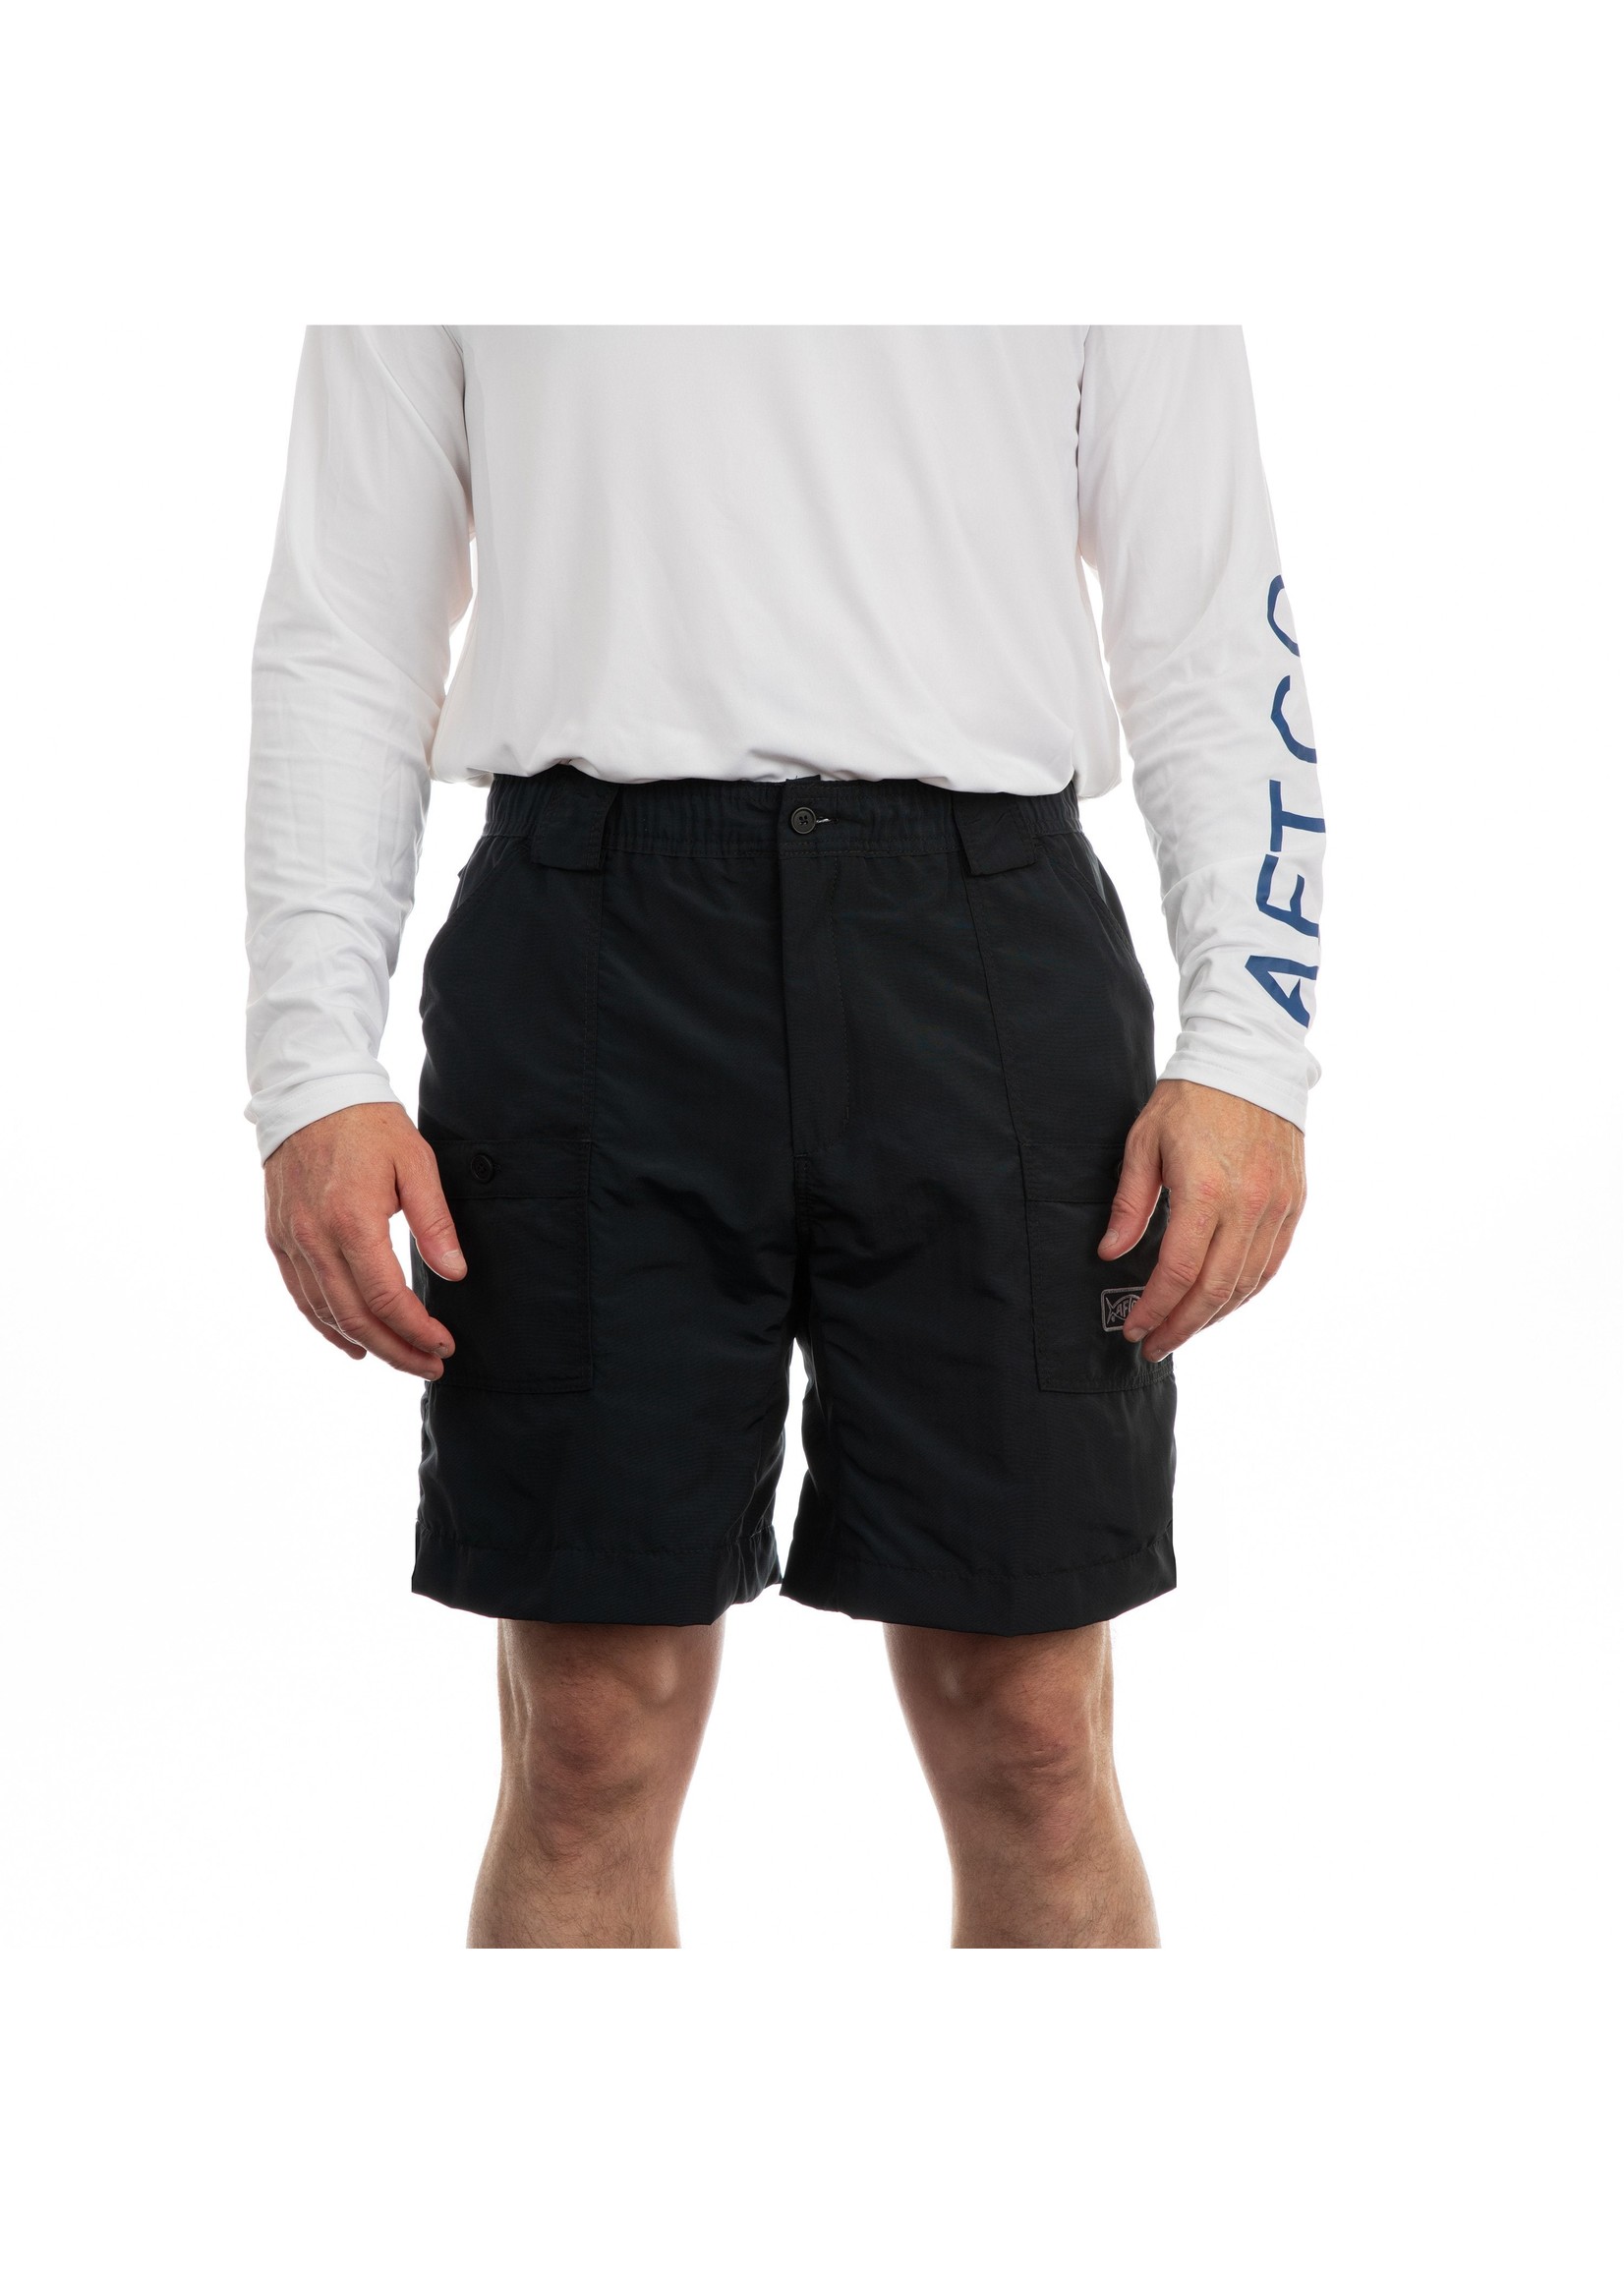 AFTCO Original Long Fishing Shorts